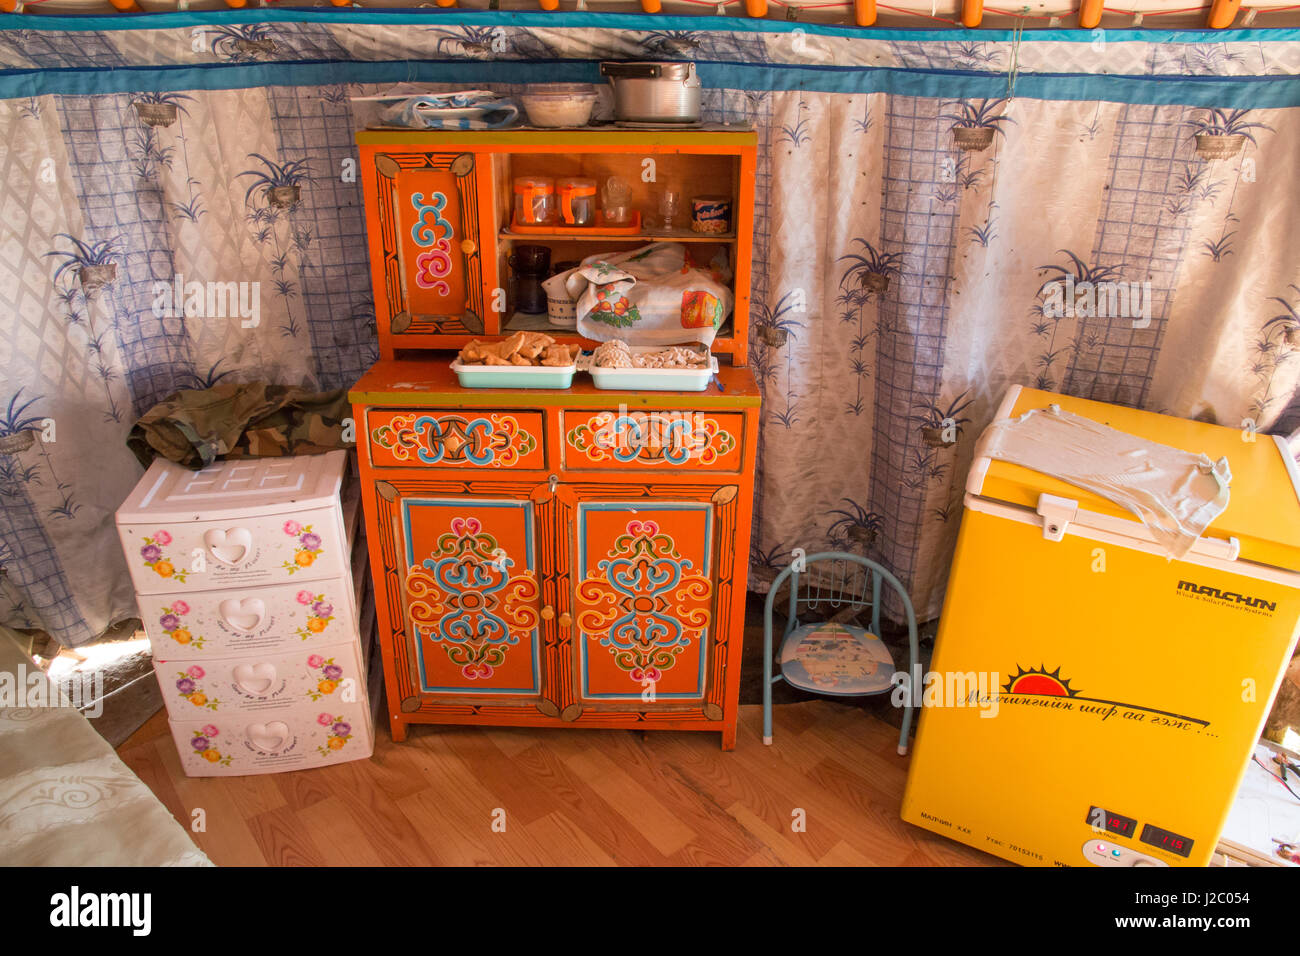 Asien, Mongolei, Hustai Nationalpark. in einer Jurte/Ger Zelt, Küchenschrank mit Essen und sortierten Geschirr zeigen. Gelbe Gefrierschrank, solarbetriebene. (Nur zur redaktionellen Verwendung) Stockfoto